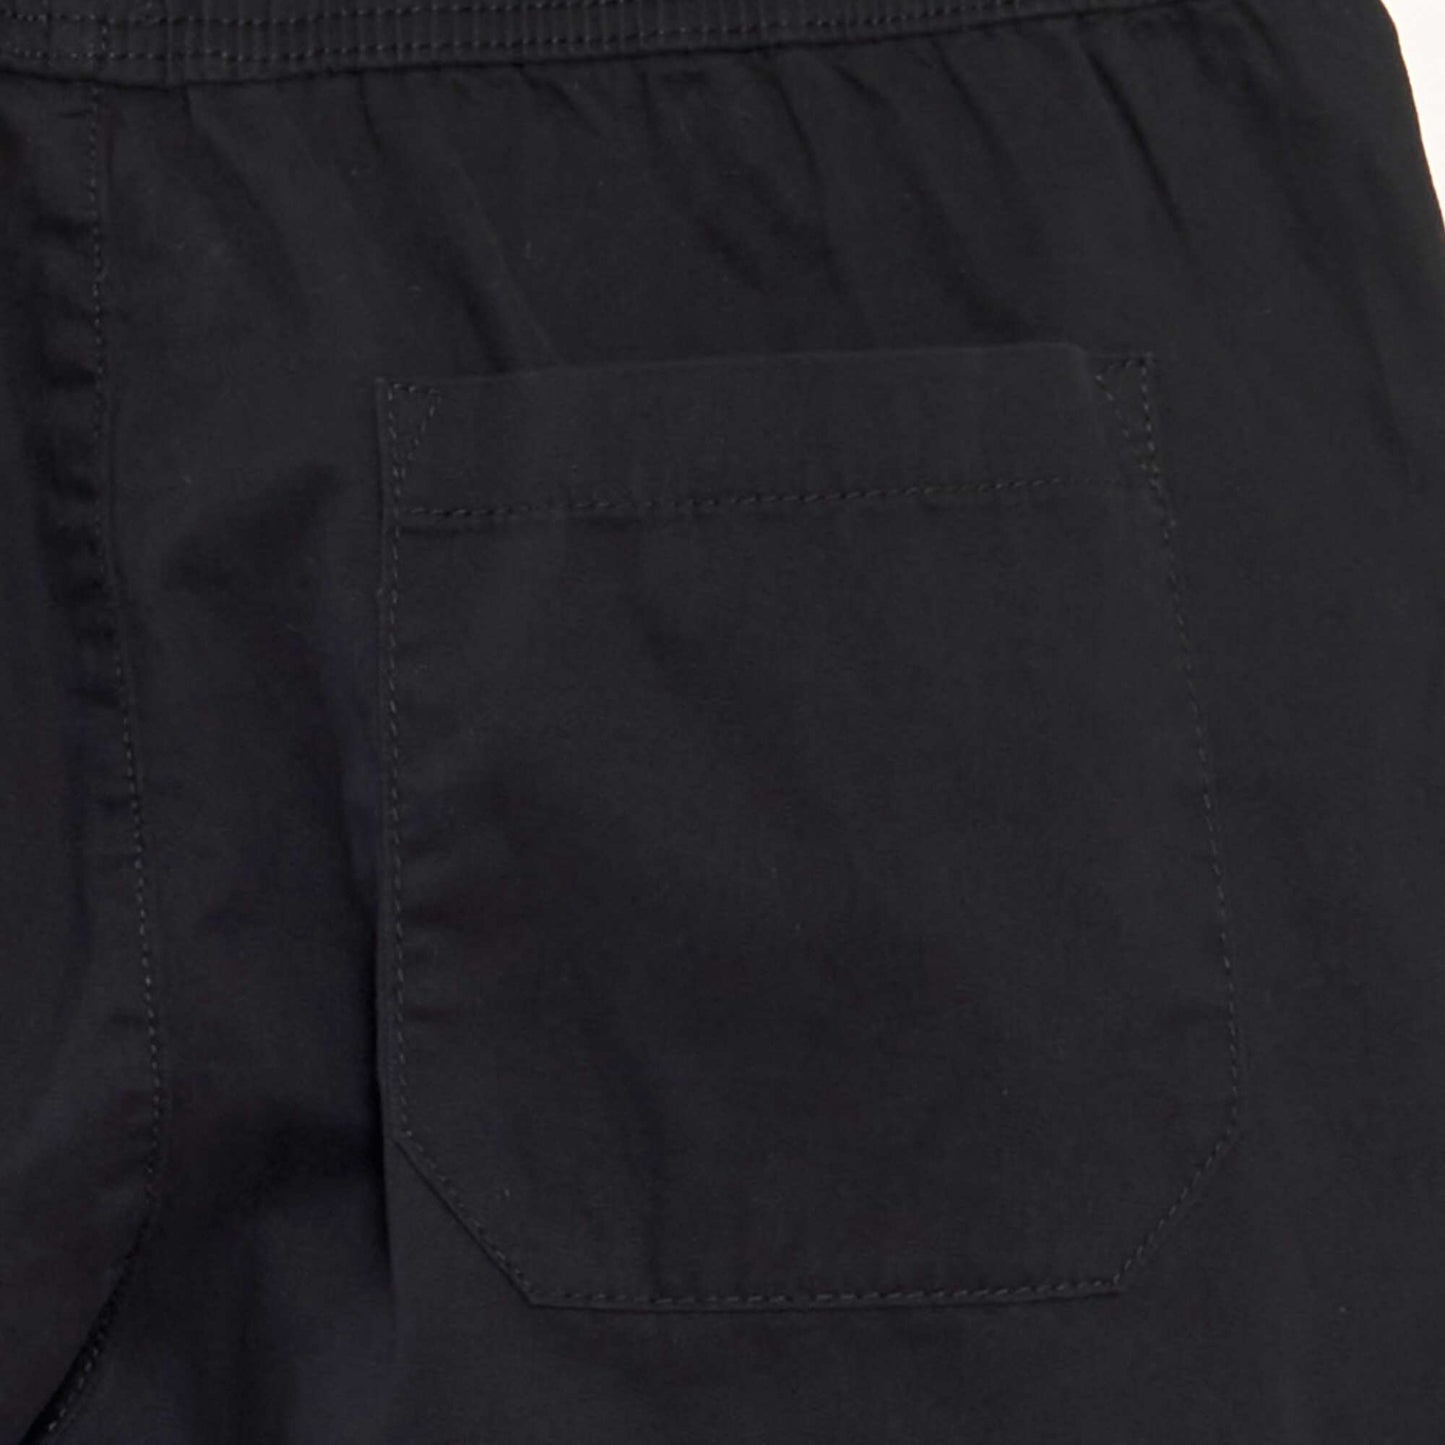 Chino Bermuda shorts with elasticated waist black